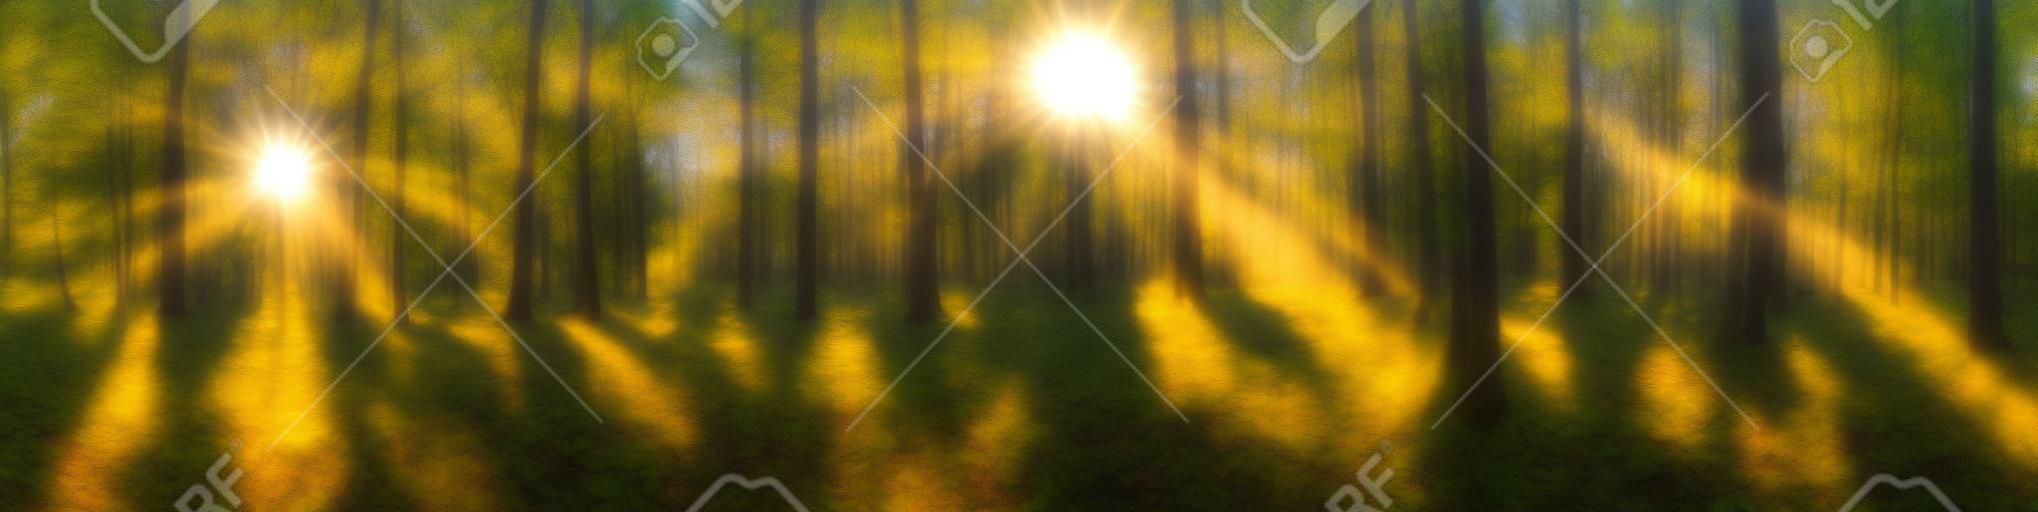 Prachtig bos panorama met heldere zon die door de bomen schijnt